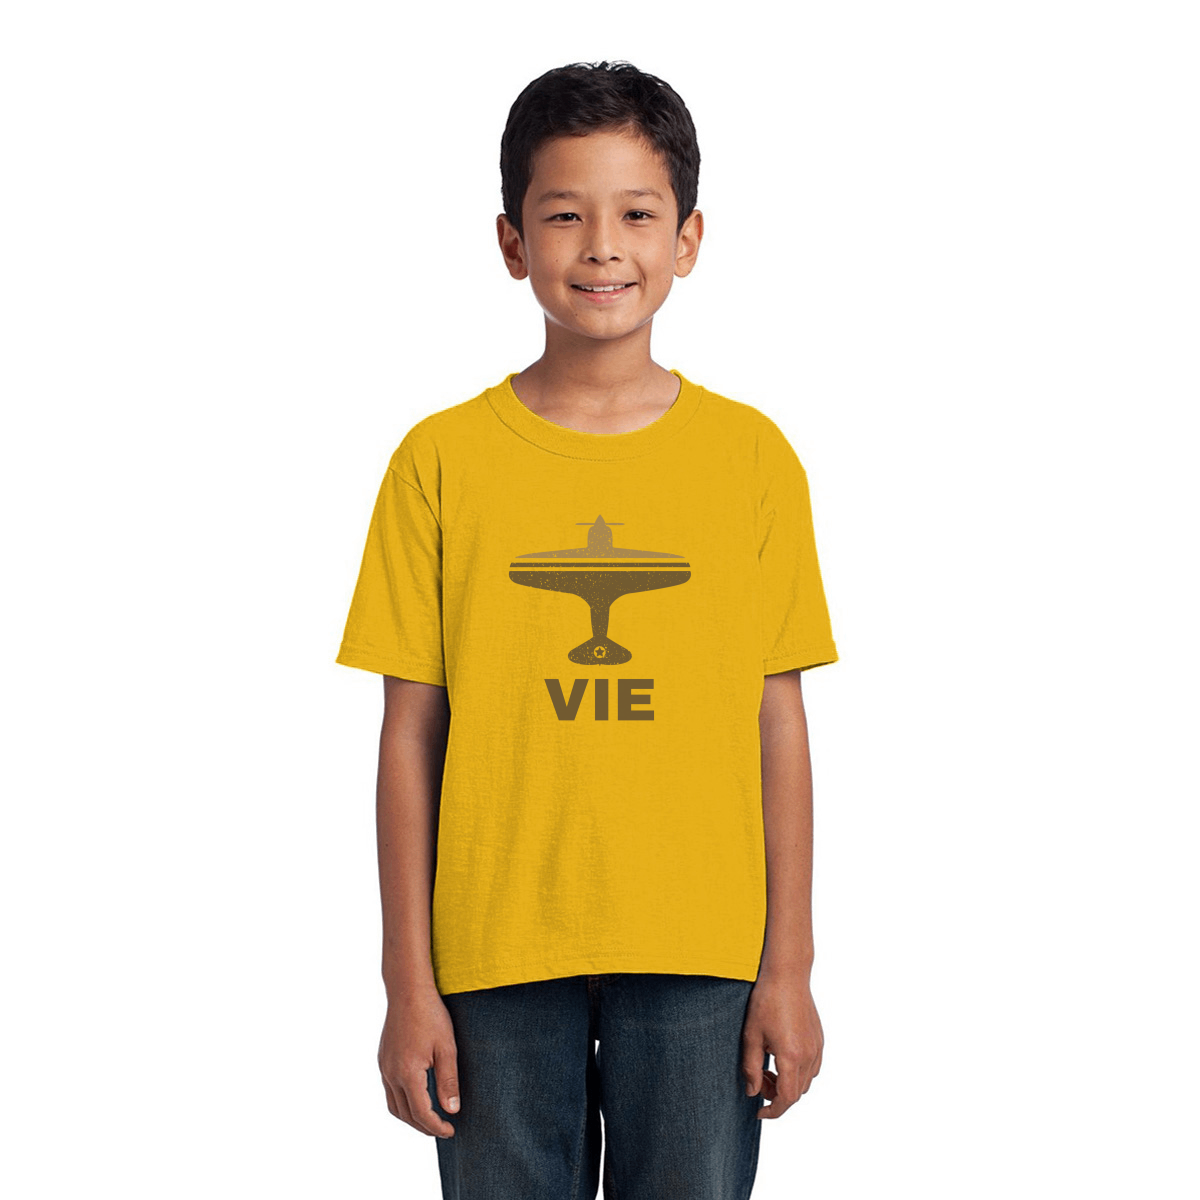 Fly Vienna VIE Airport Kids T-shirt | Yellow